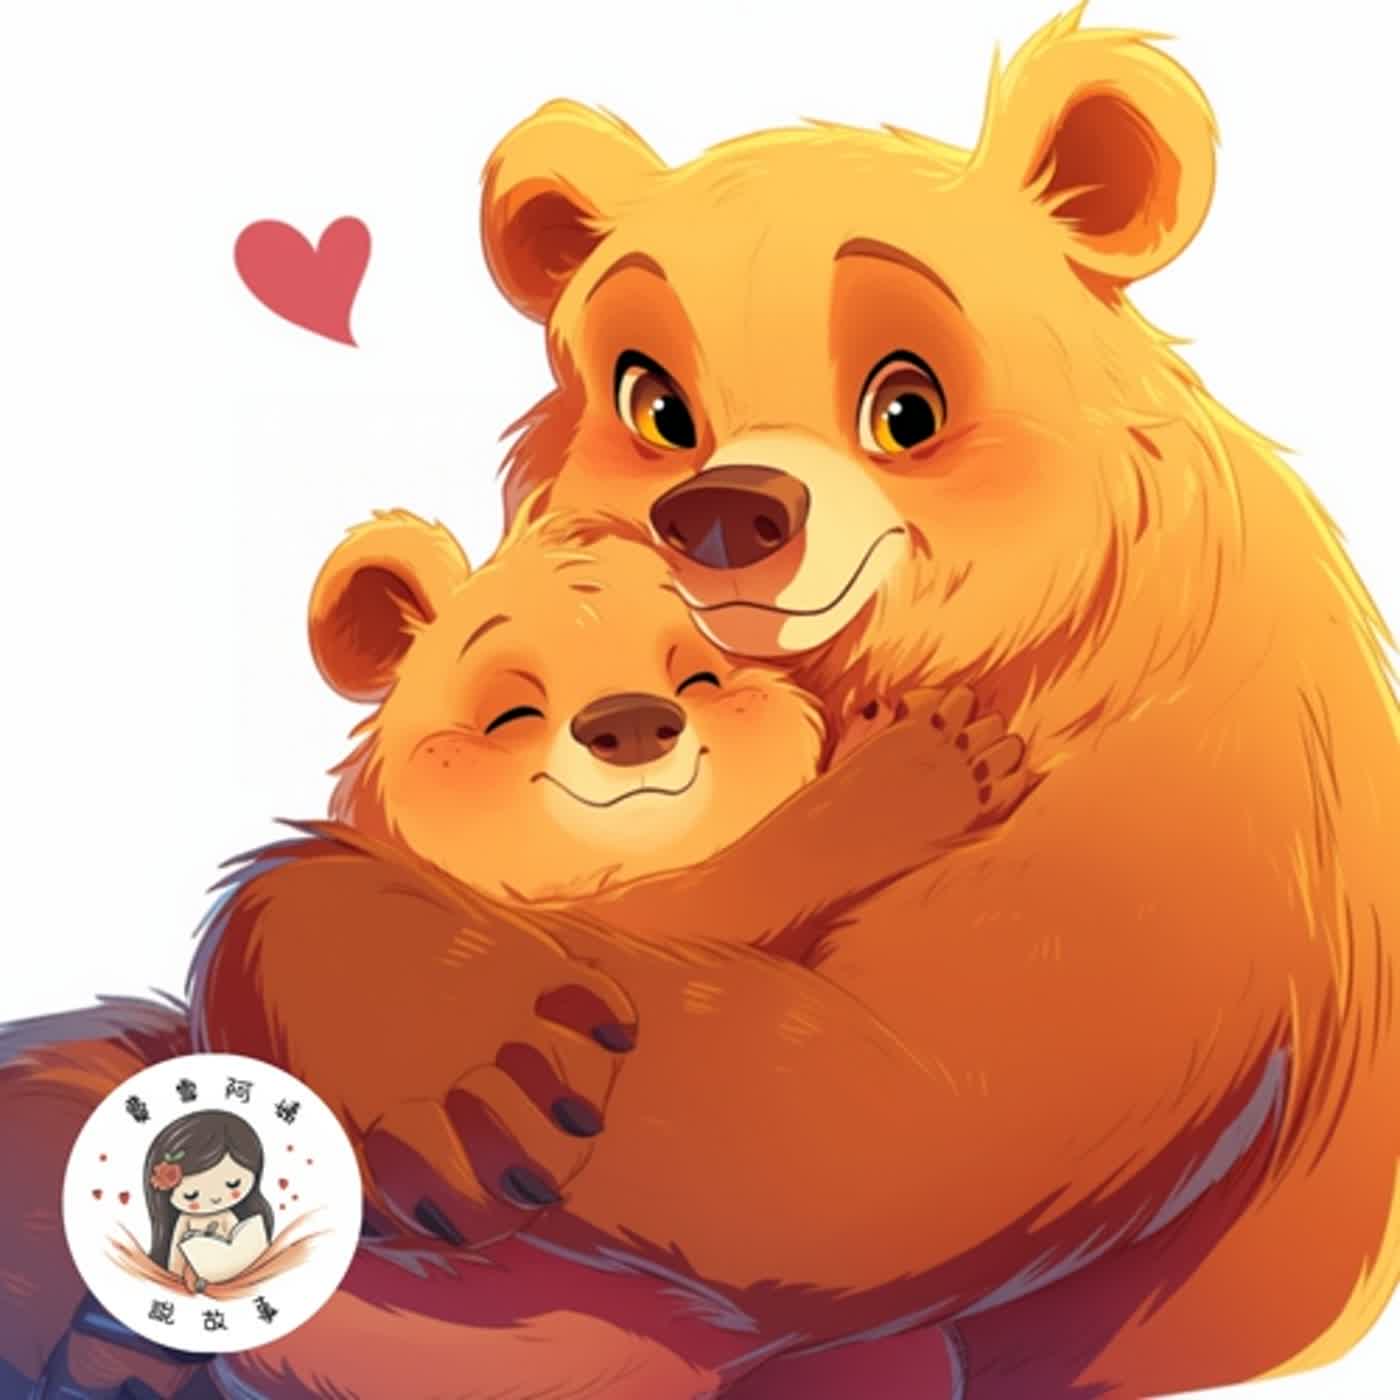 【兒童故事】EP31 睡前故事《熊熊媽媽過生日》熊熊森林冒險之旅